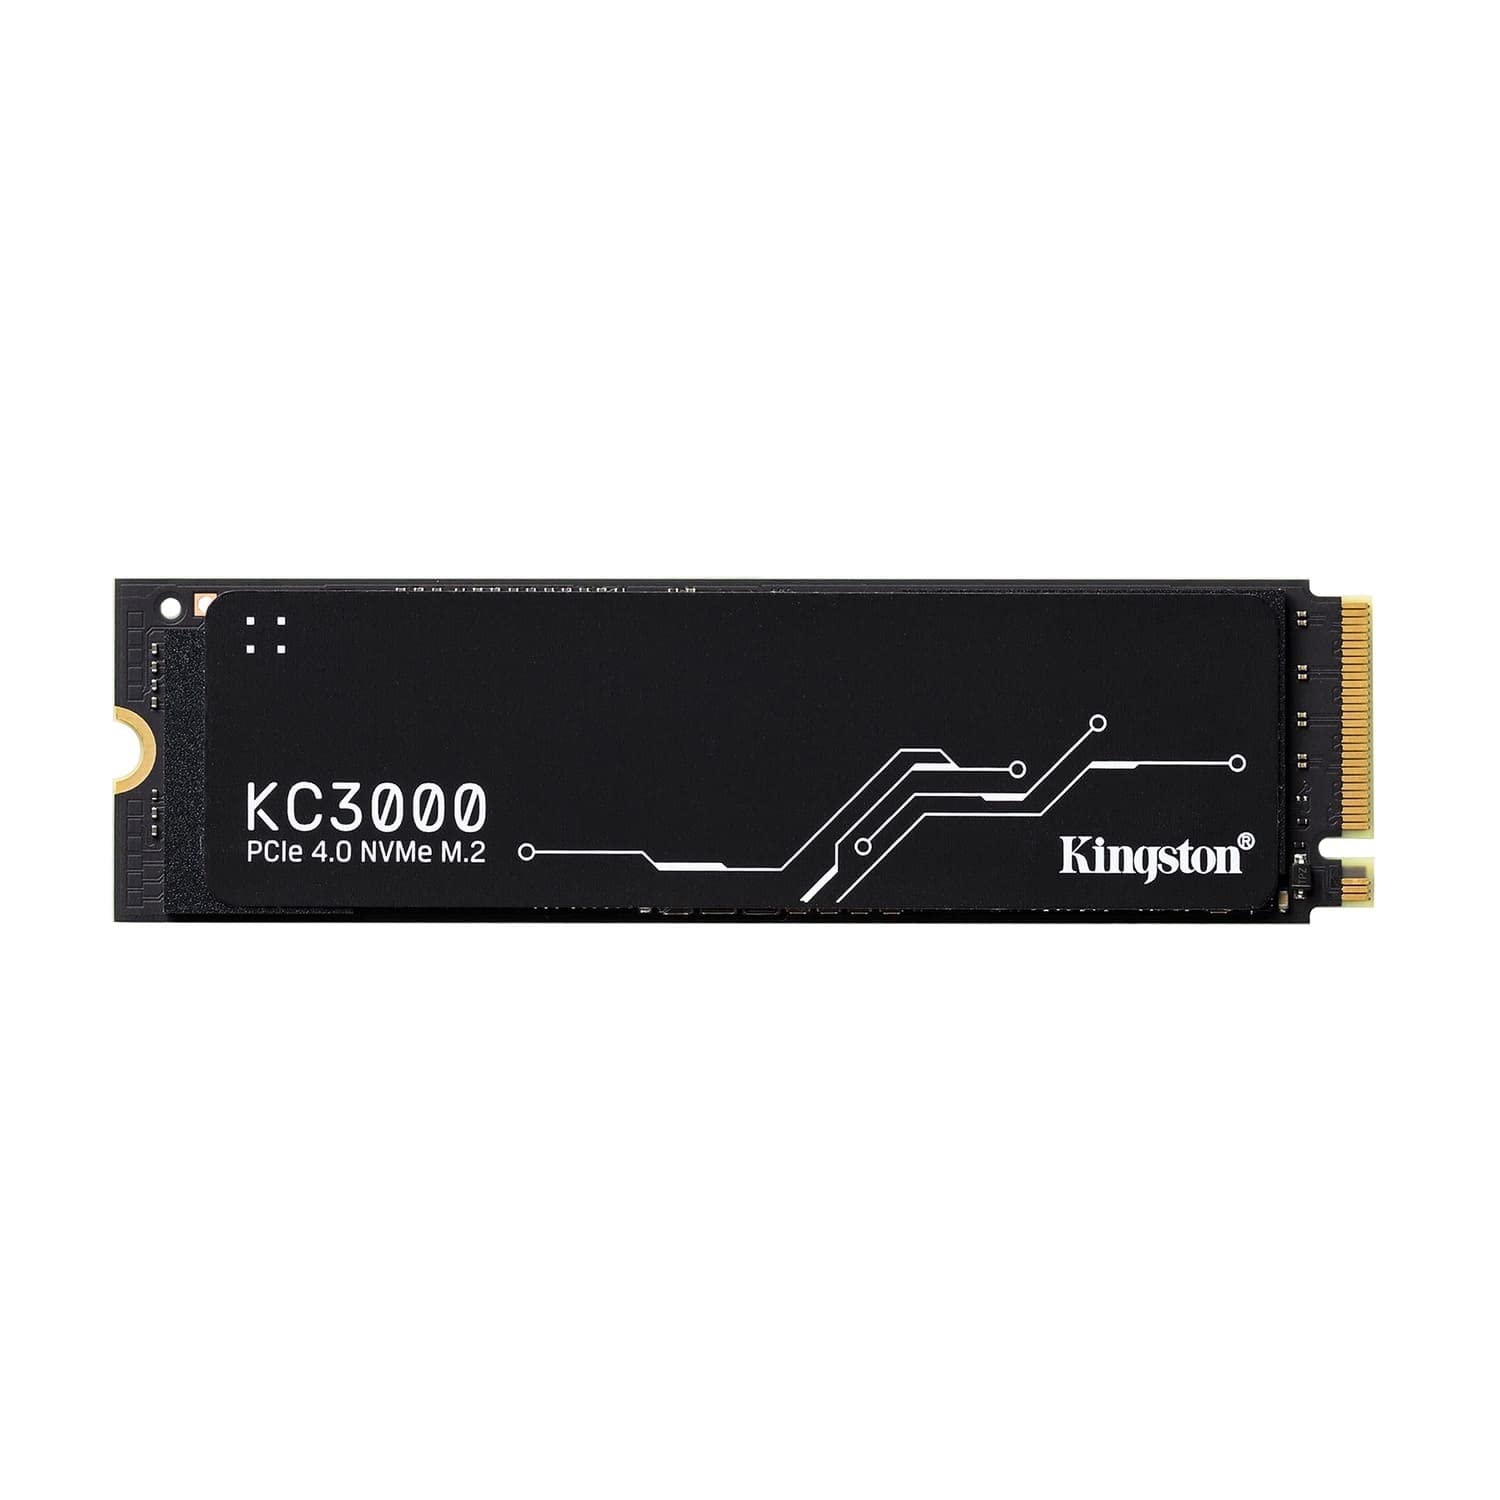 楽天松陰屋 楽天市場店キングストンテクノロジー Kingston SSD KC3000 4096GB 4TB PCIe Gen 4.0 x4 最大7,000MB/秒 PS5 動作確認済 極薄グラフェンヒートシンク M.2 2280 NVMe SKC3000D/4096G 正規代